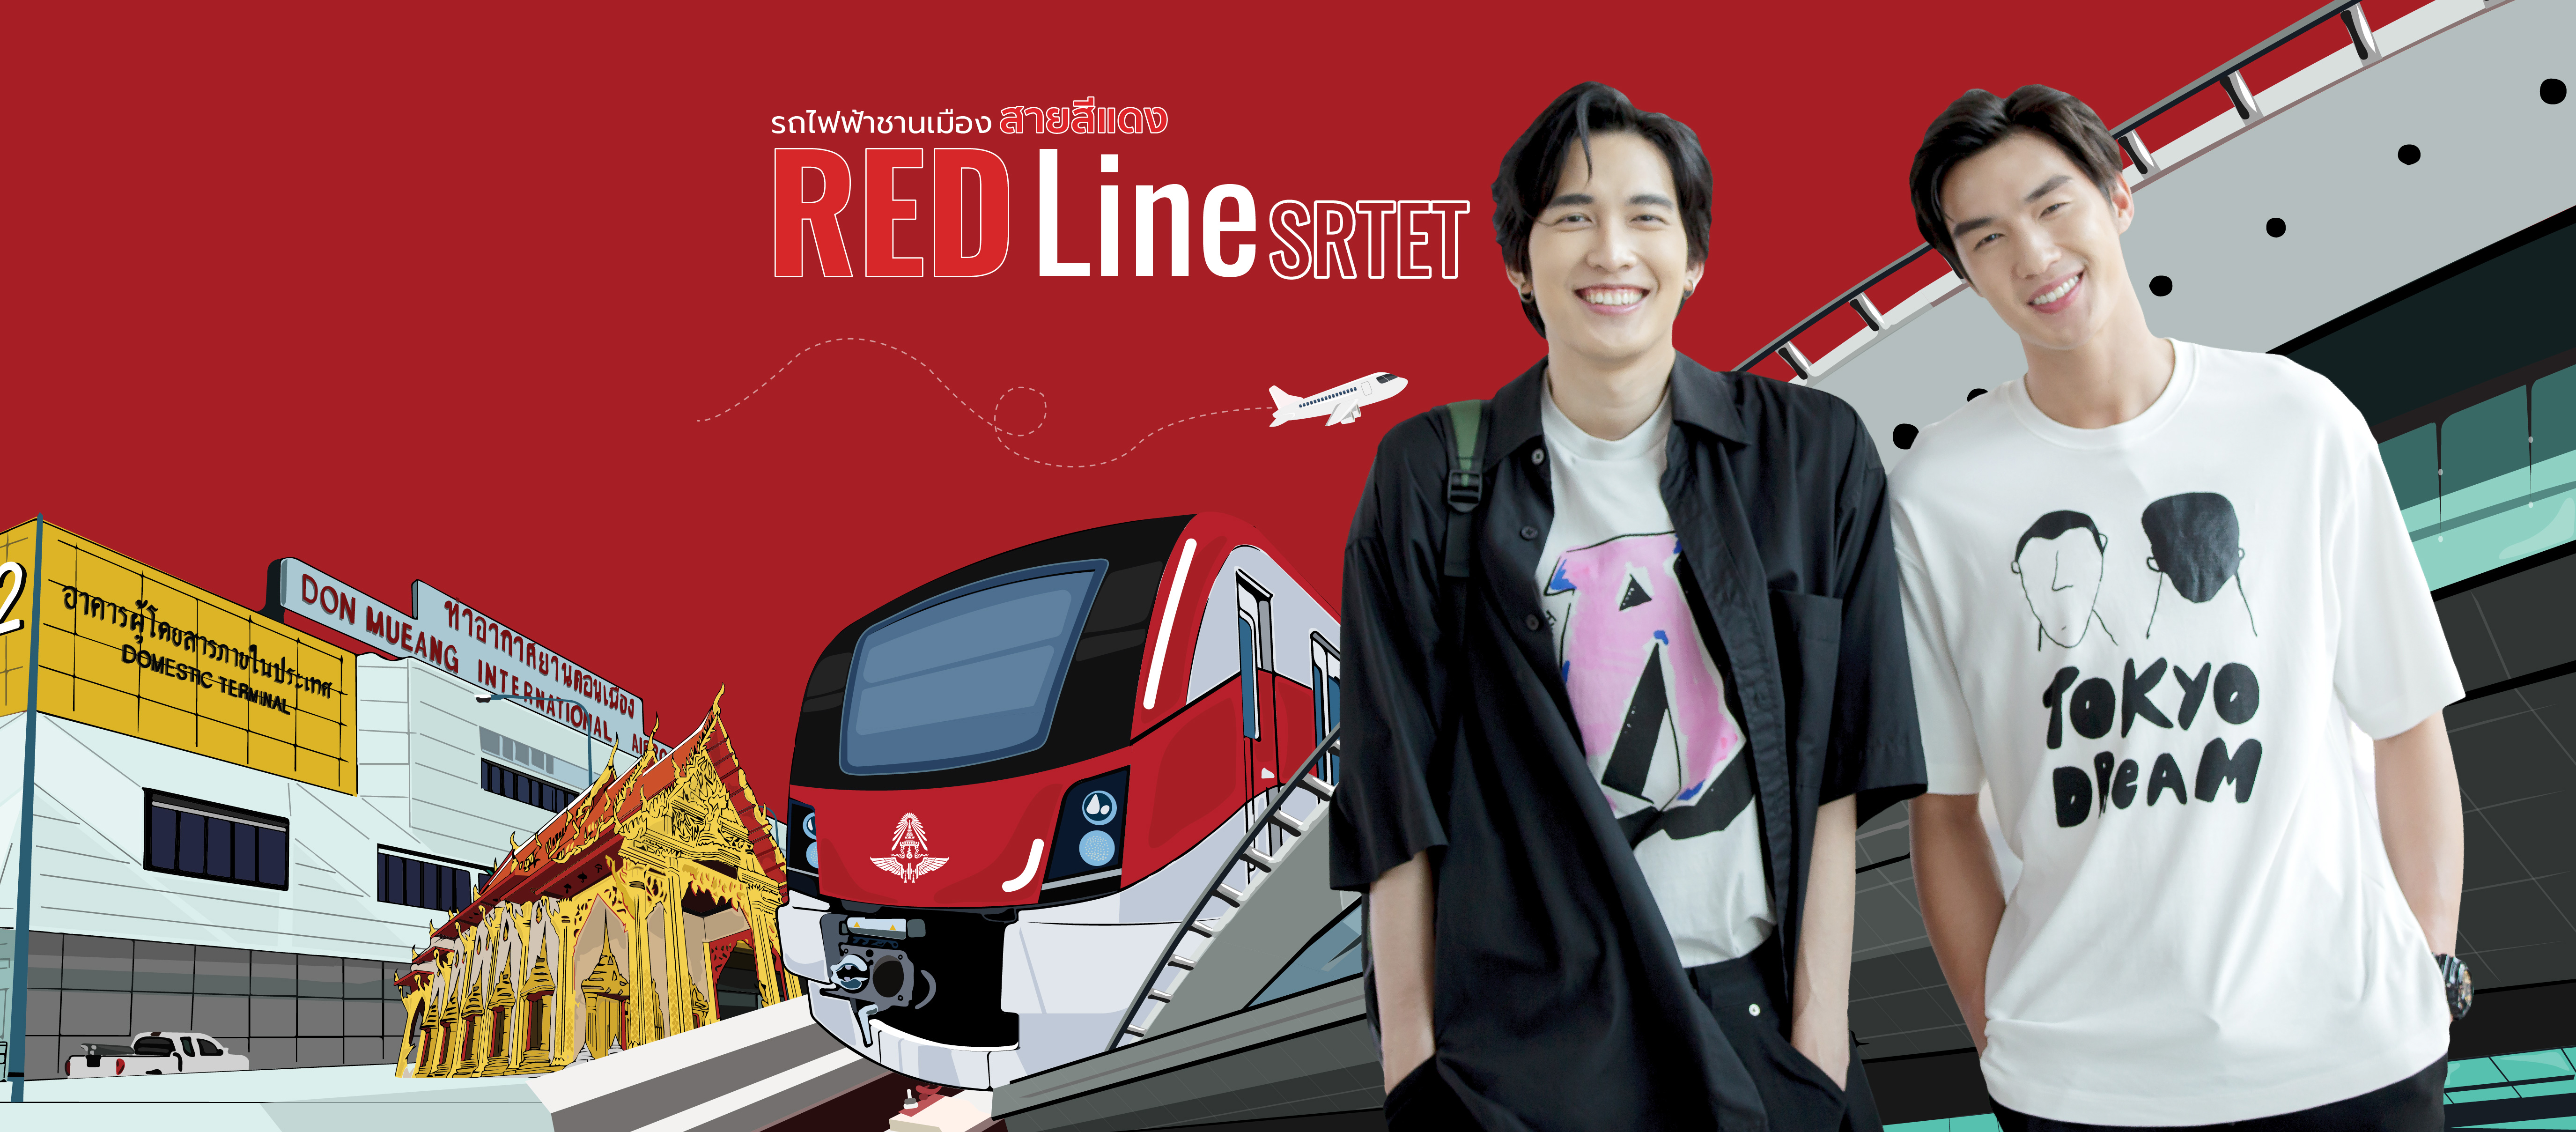 RED Line SRTET